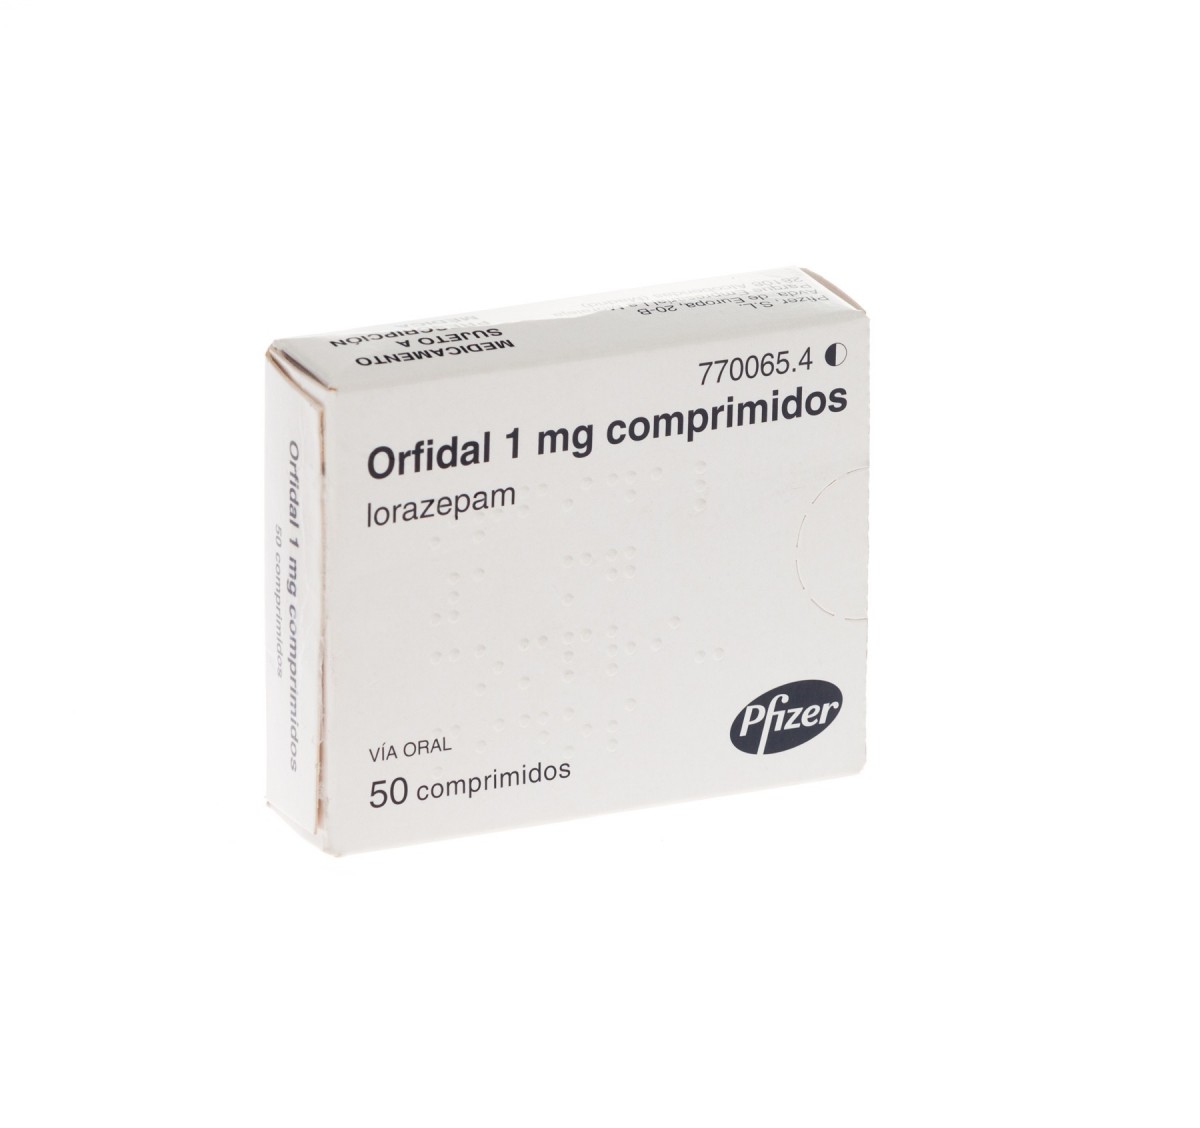 ORFIDAL 1 mg COMPRIMIDOS, 50 comprimidos. Precio: €.